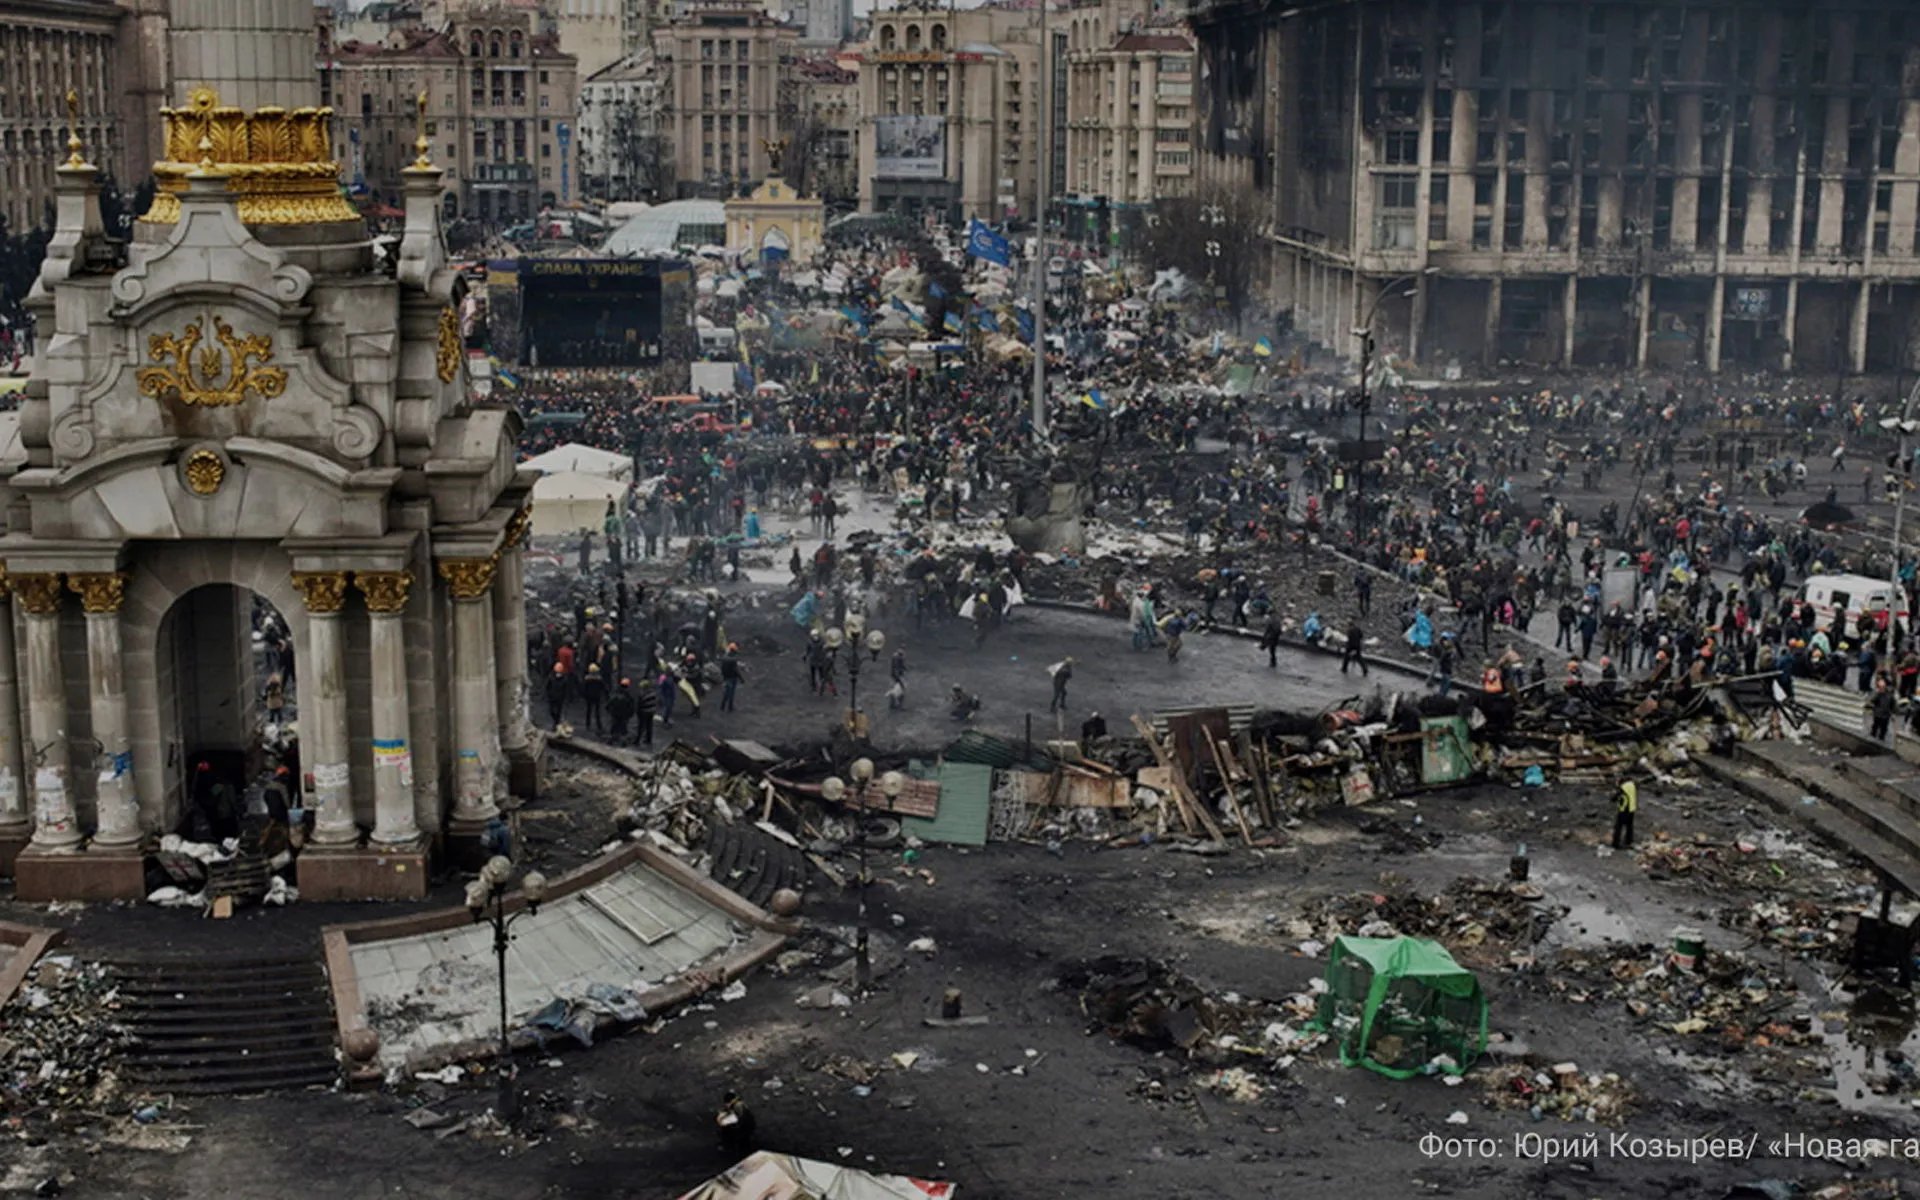 Цена свободы. 7 лет назад в Украине победил Майдан, Янукович бежал из Киева